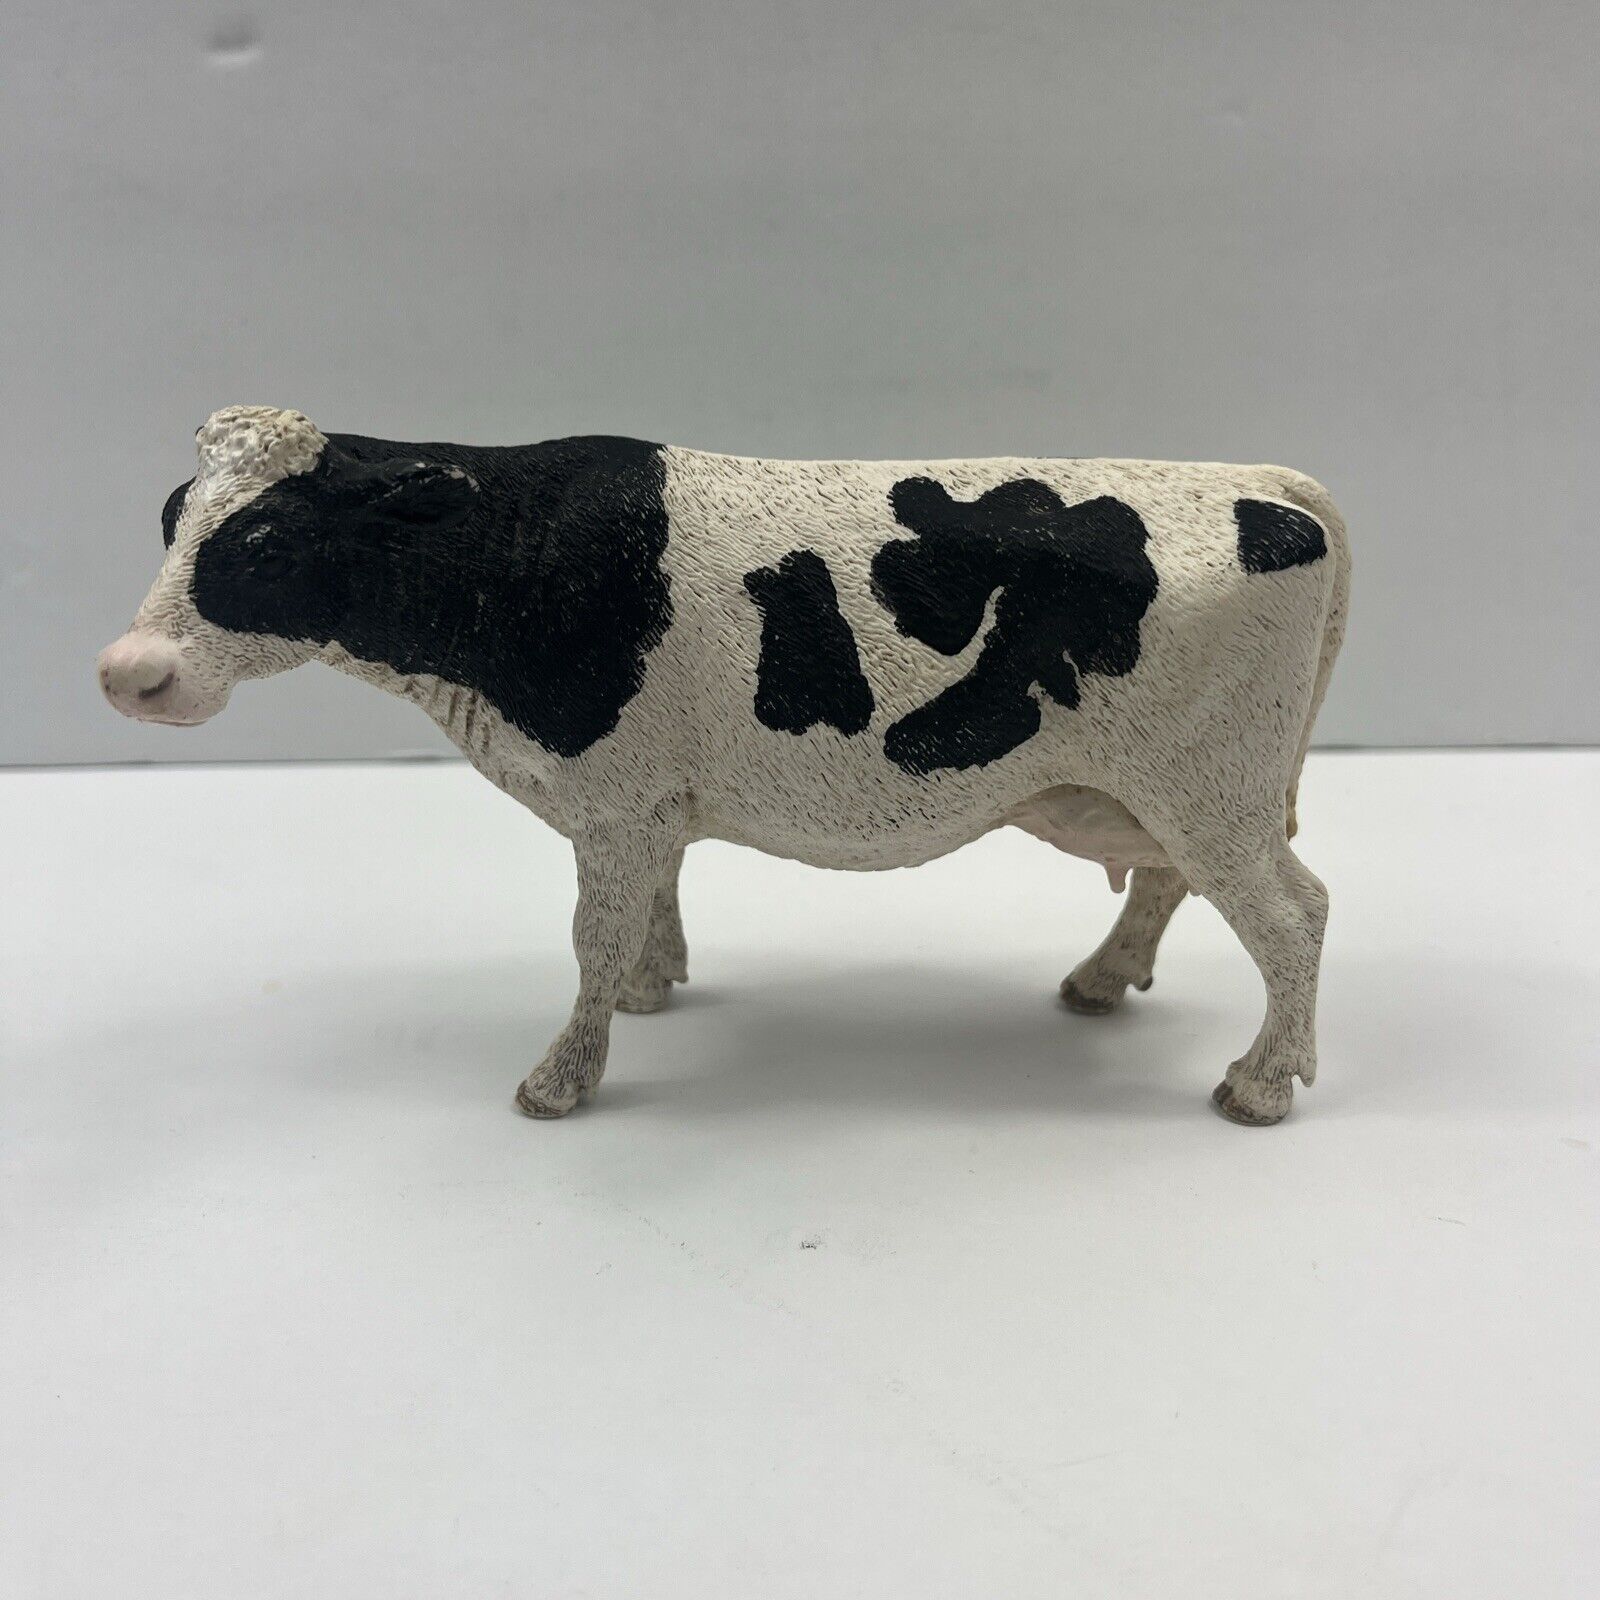 Schleich Holstein Dairy Cow 2015 Farm Animal Figure Figurine Black White 13797